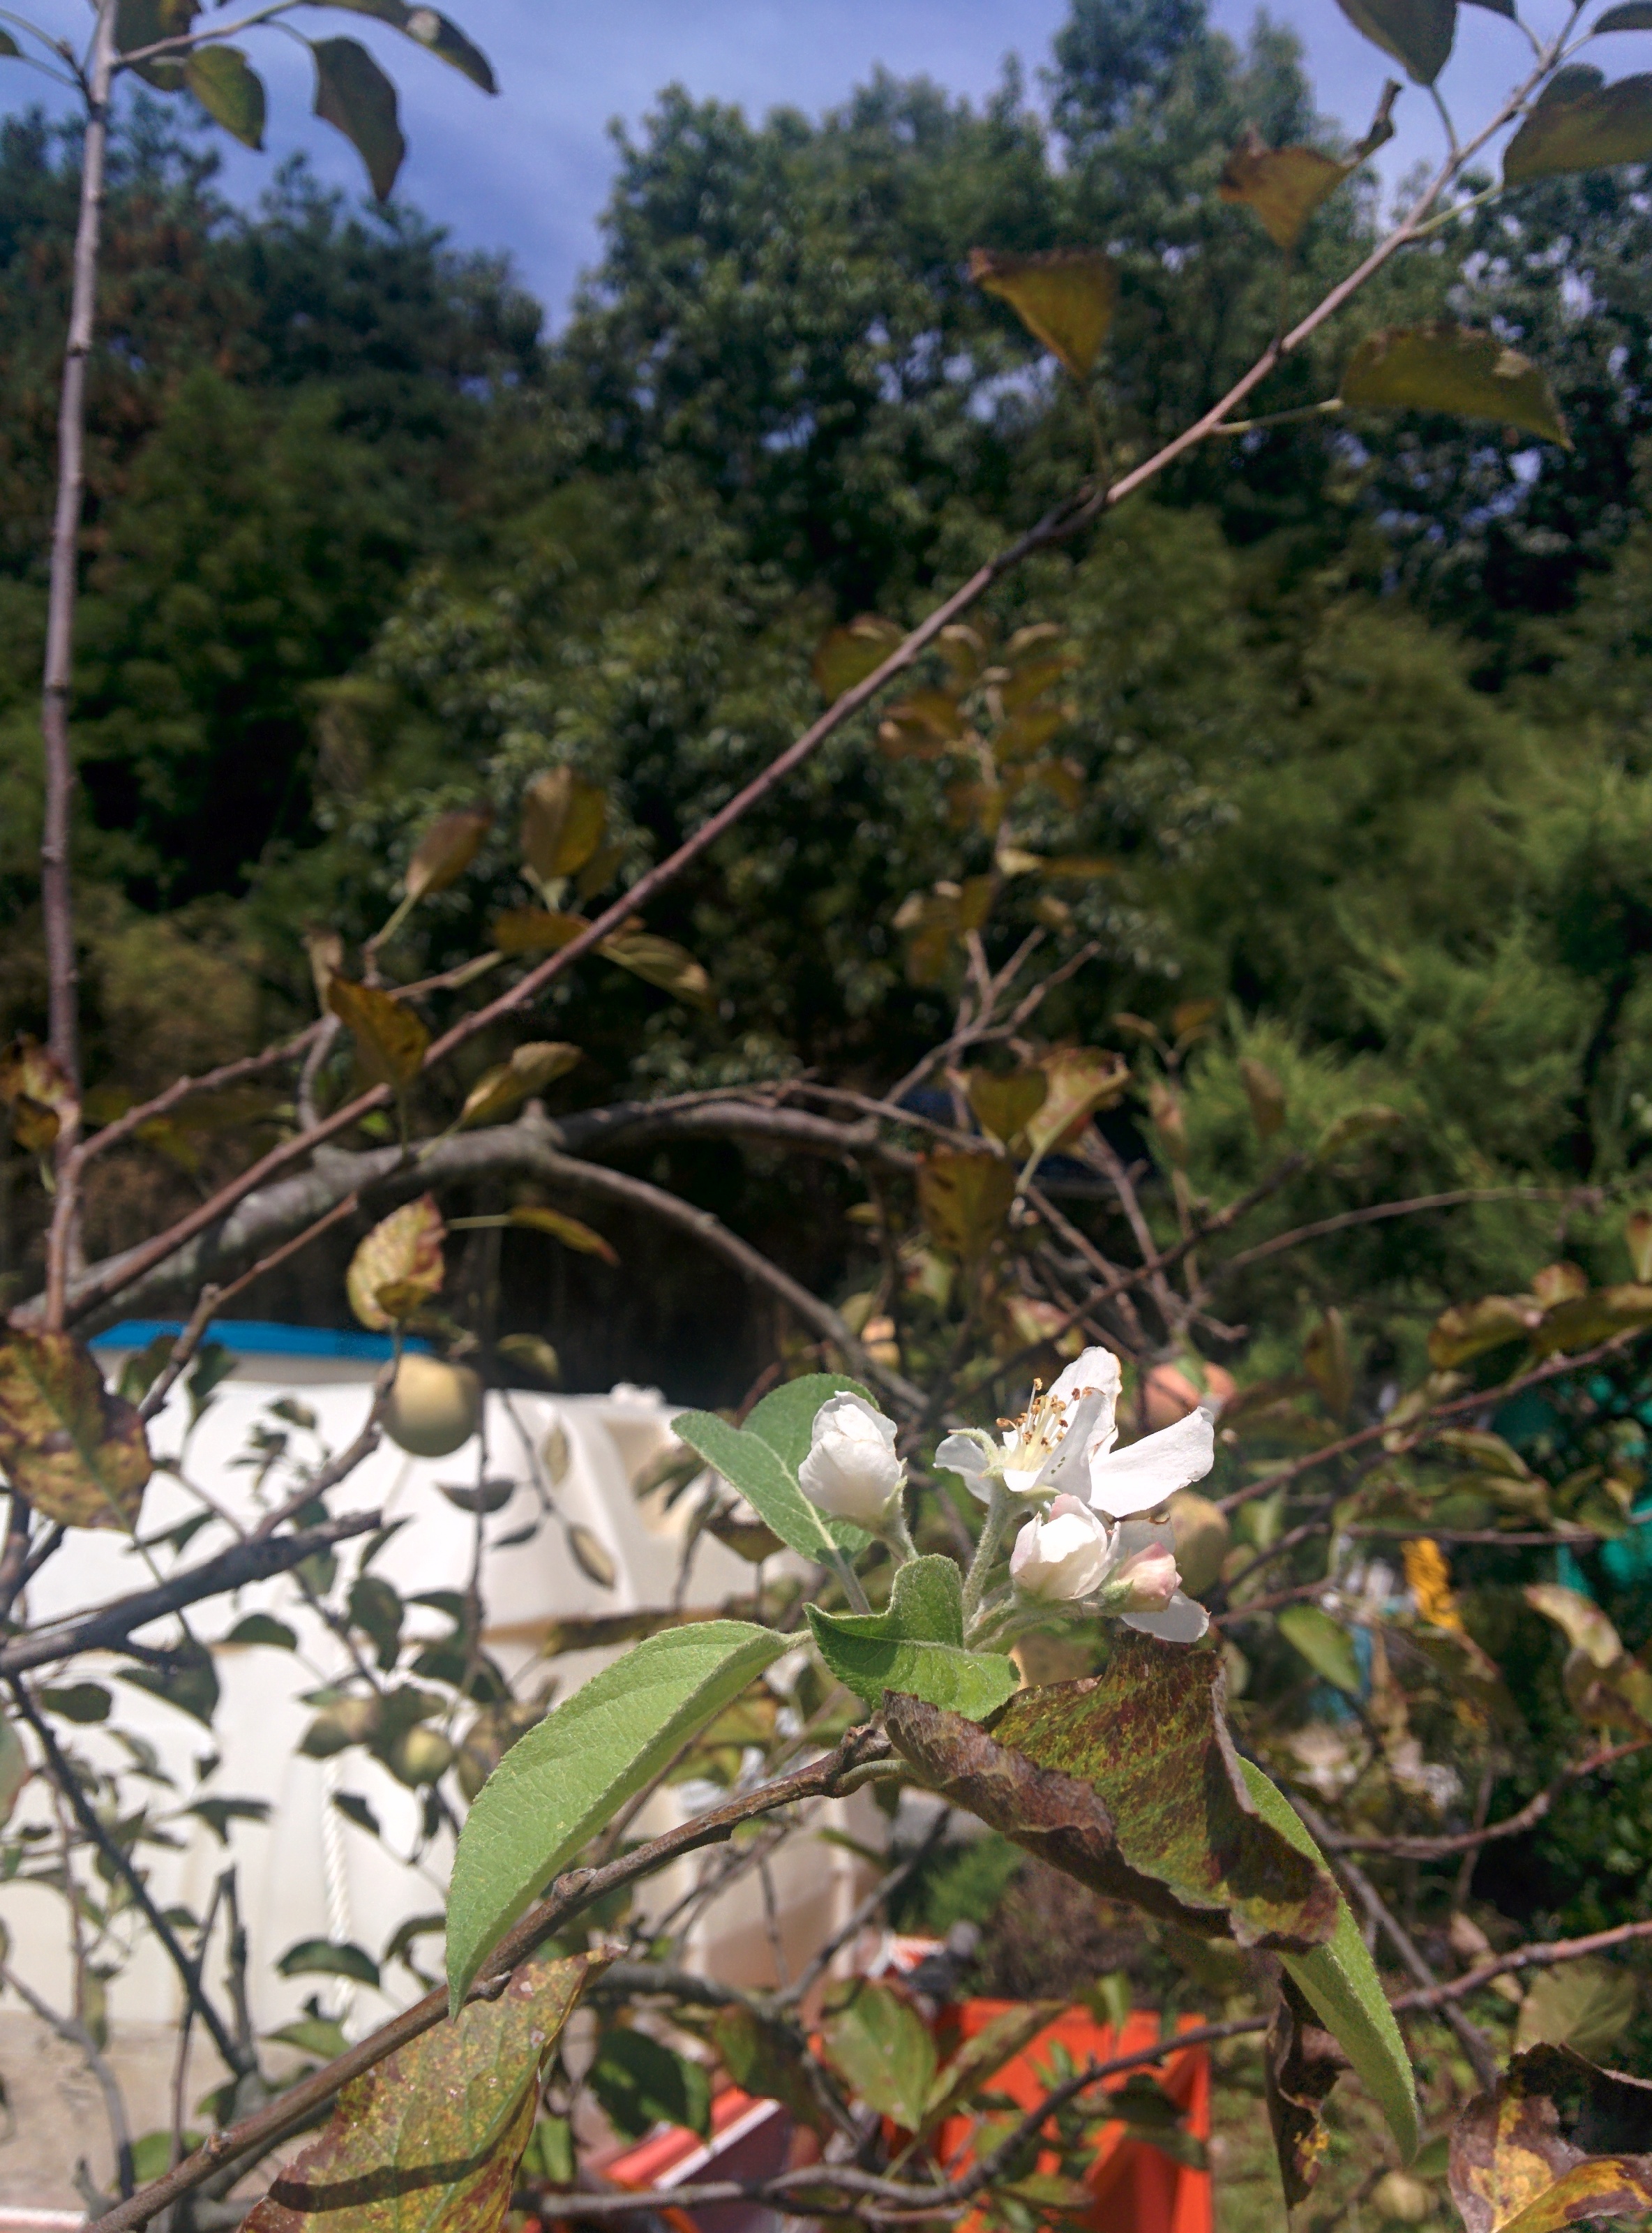 IMG_20150914_124354.jpg 때늦게 하얀 꽃을 피우는 사과나무